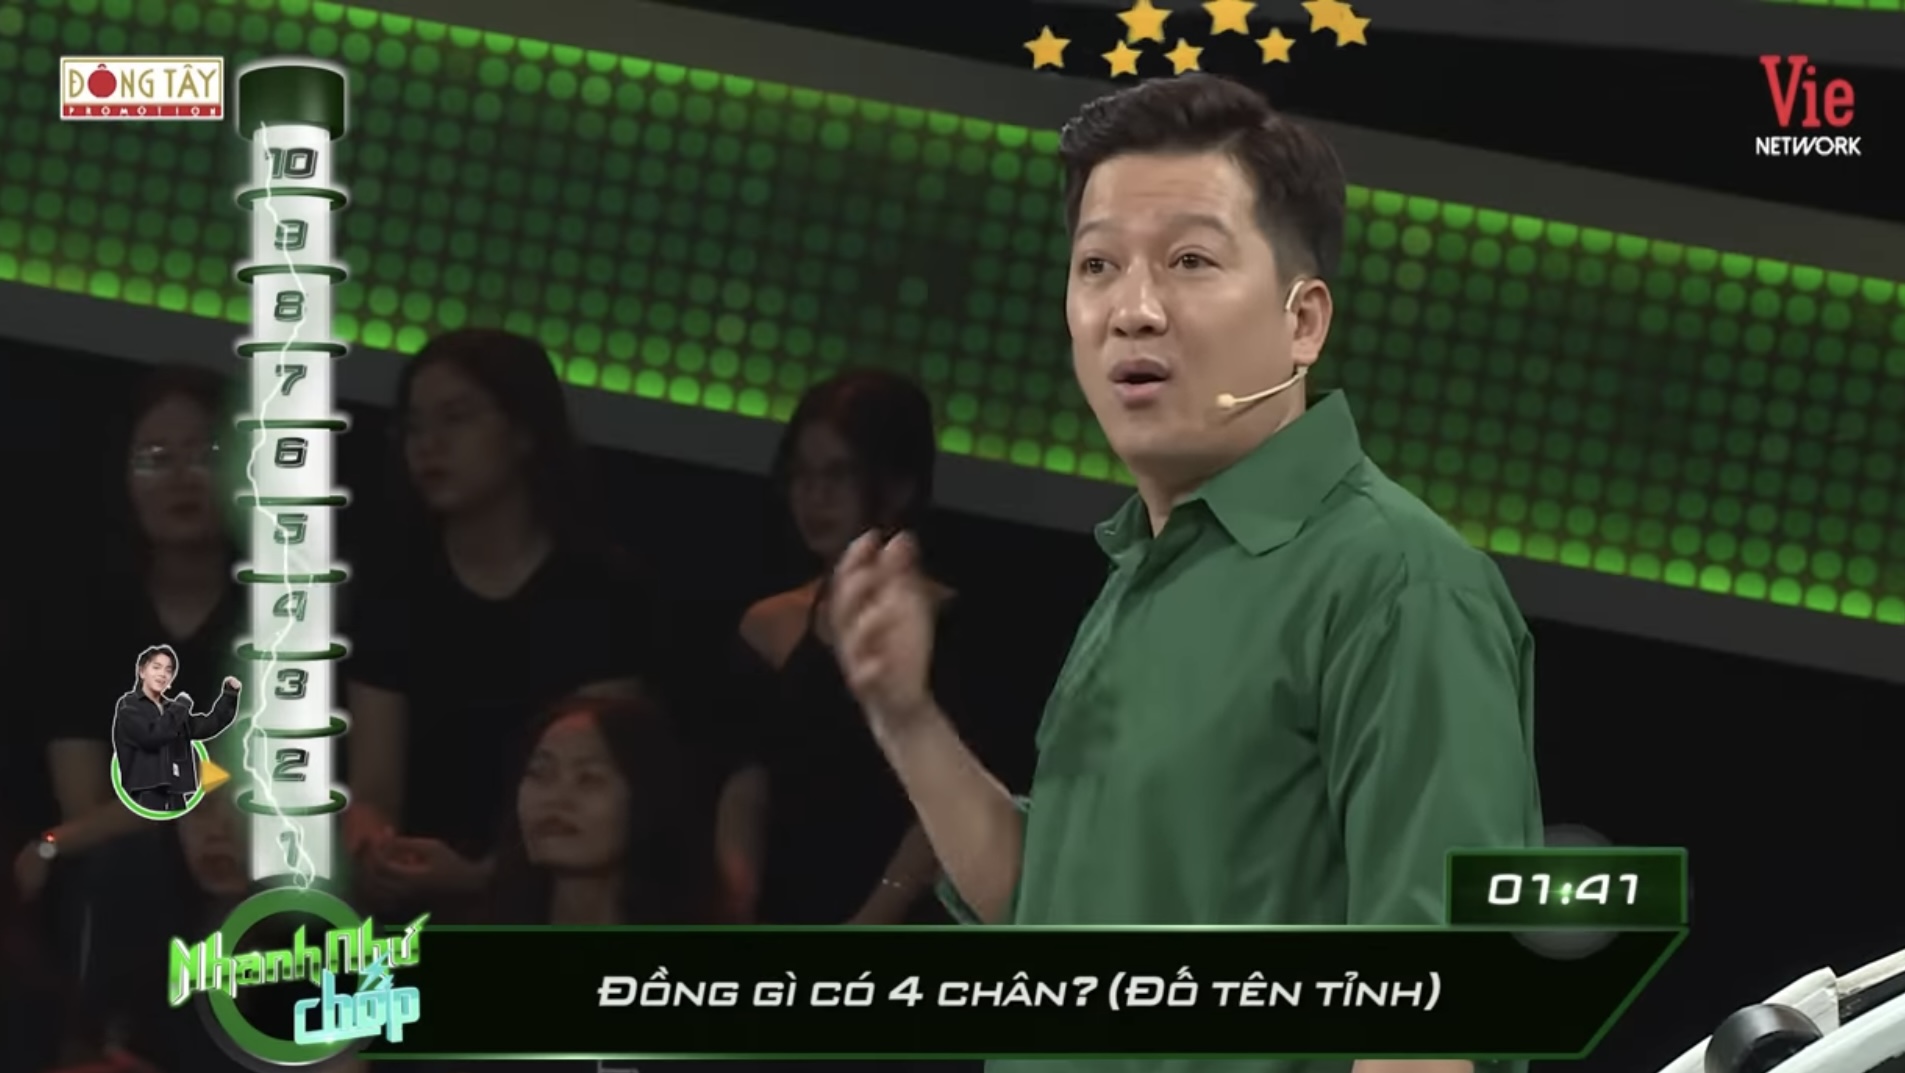 Câu đố Tiếng Việt: &quot;Đồng gì có 4 CHÂN?&quot; – Nghe đáp án phì cười bởi chơi chữ quá lắt léo - Ảnh 1.